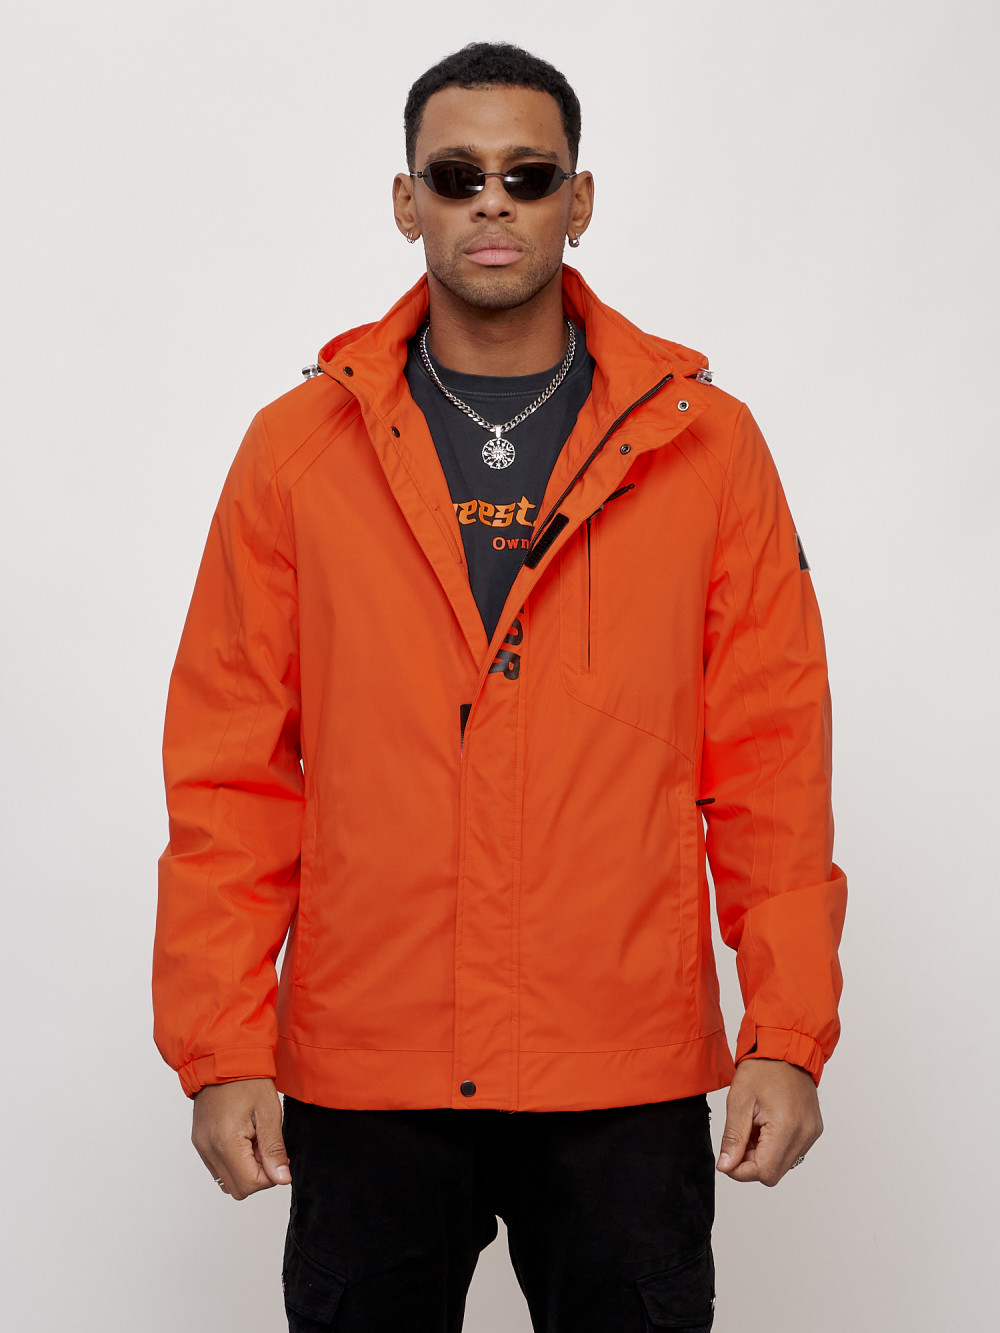 Купить оптом Куртка спортивная мужская весенняя с капюшоном оранжевого цвета 88022O в Казани